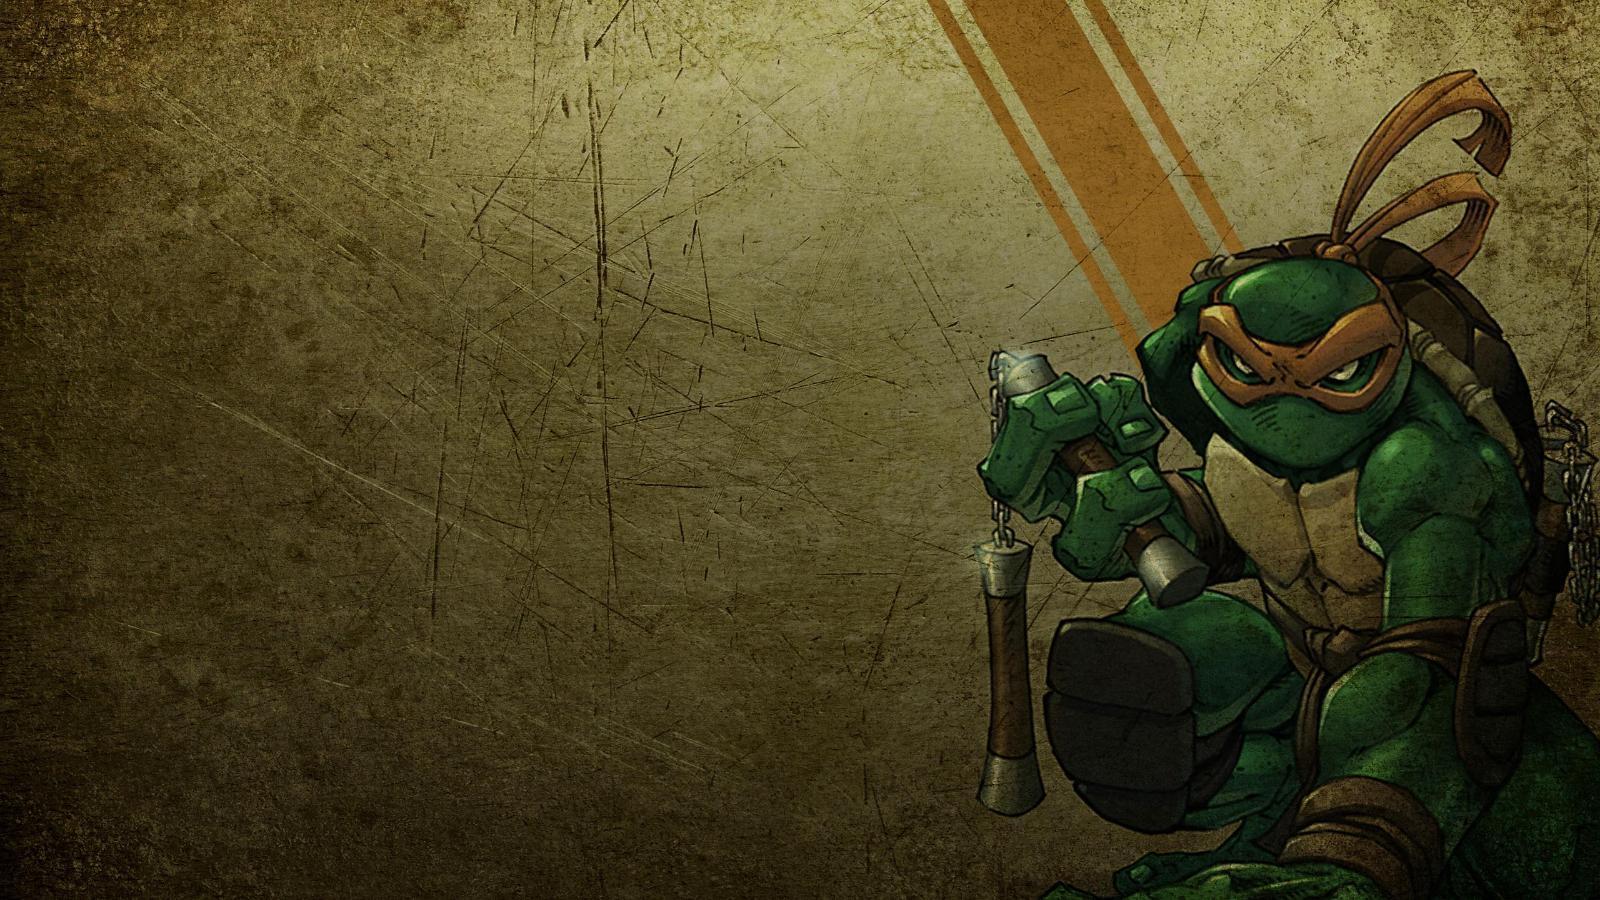 Michelangelo: Widescreen Turtles Wallpaper